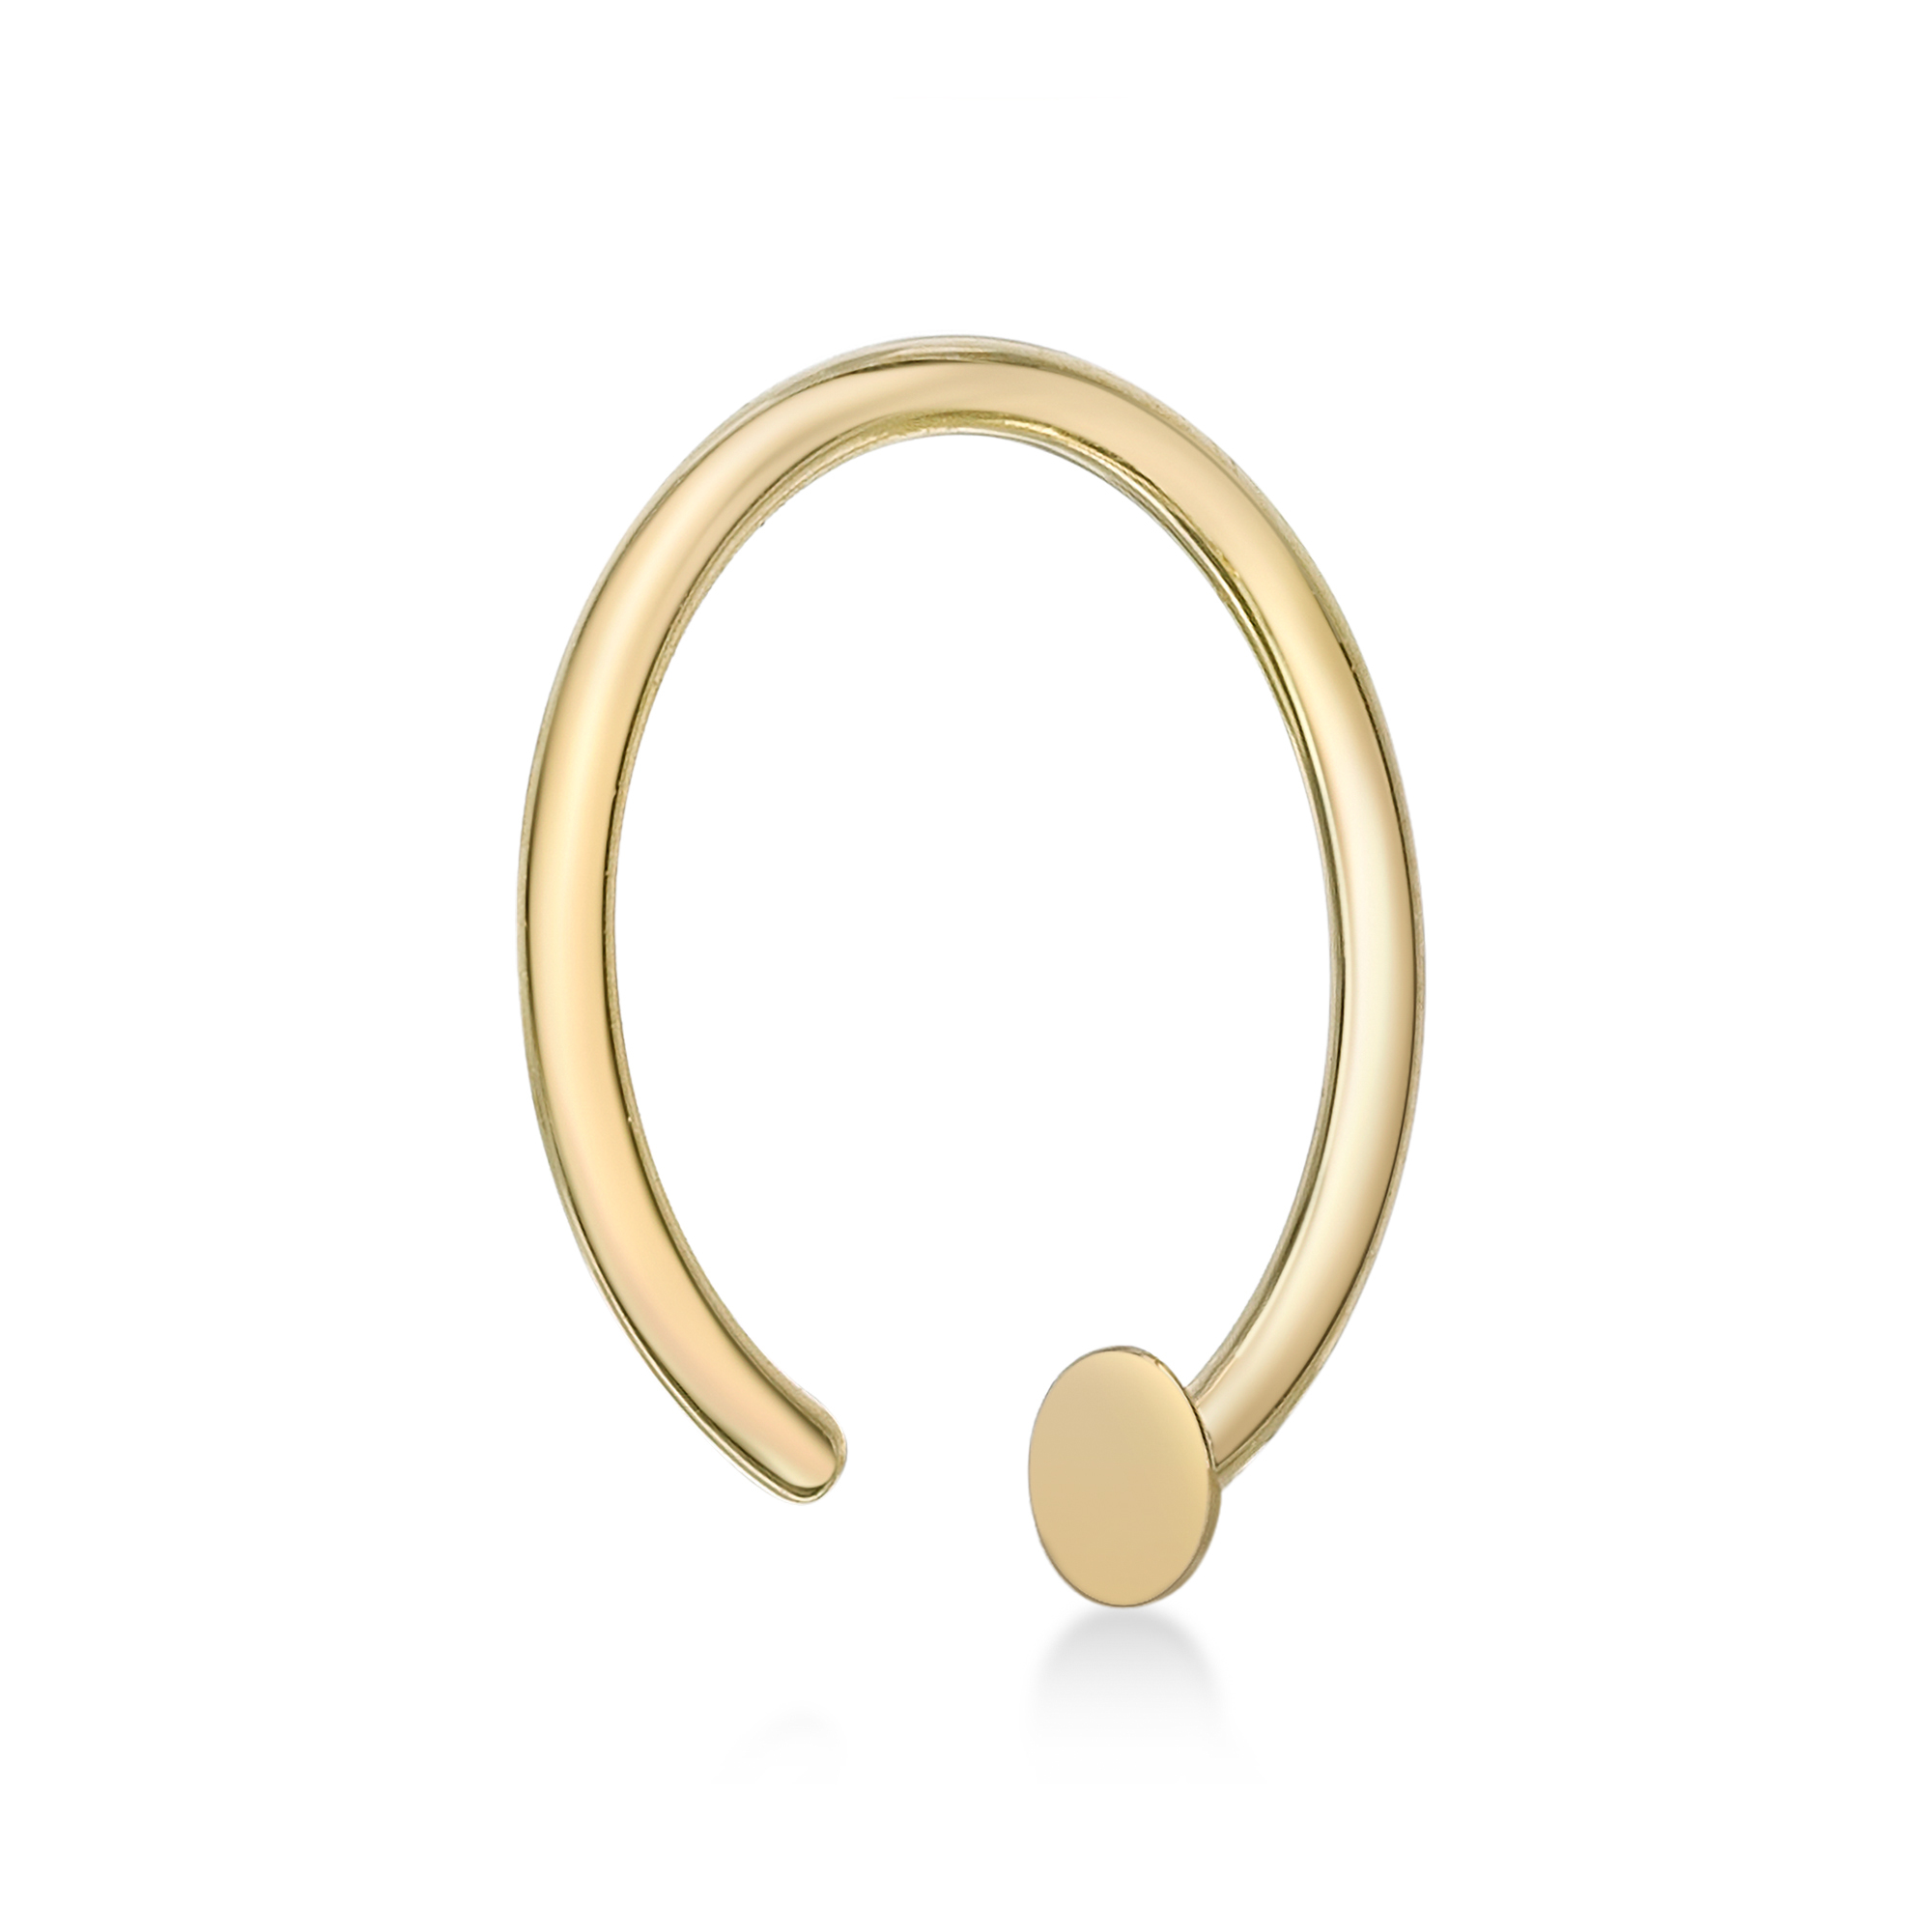 Lavari Jewelers Women's Open Nose Ring Hoop, 14K Yellow Gold, 10 MM, 20 Gauge